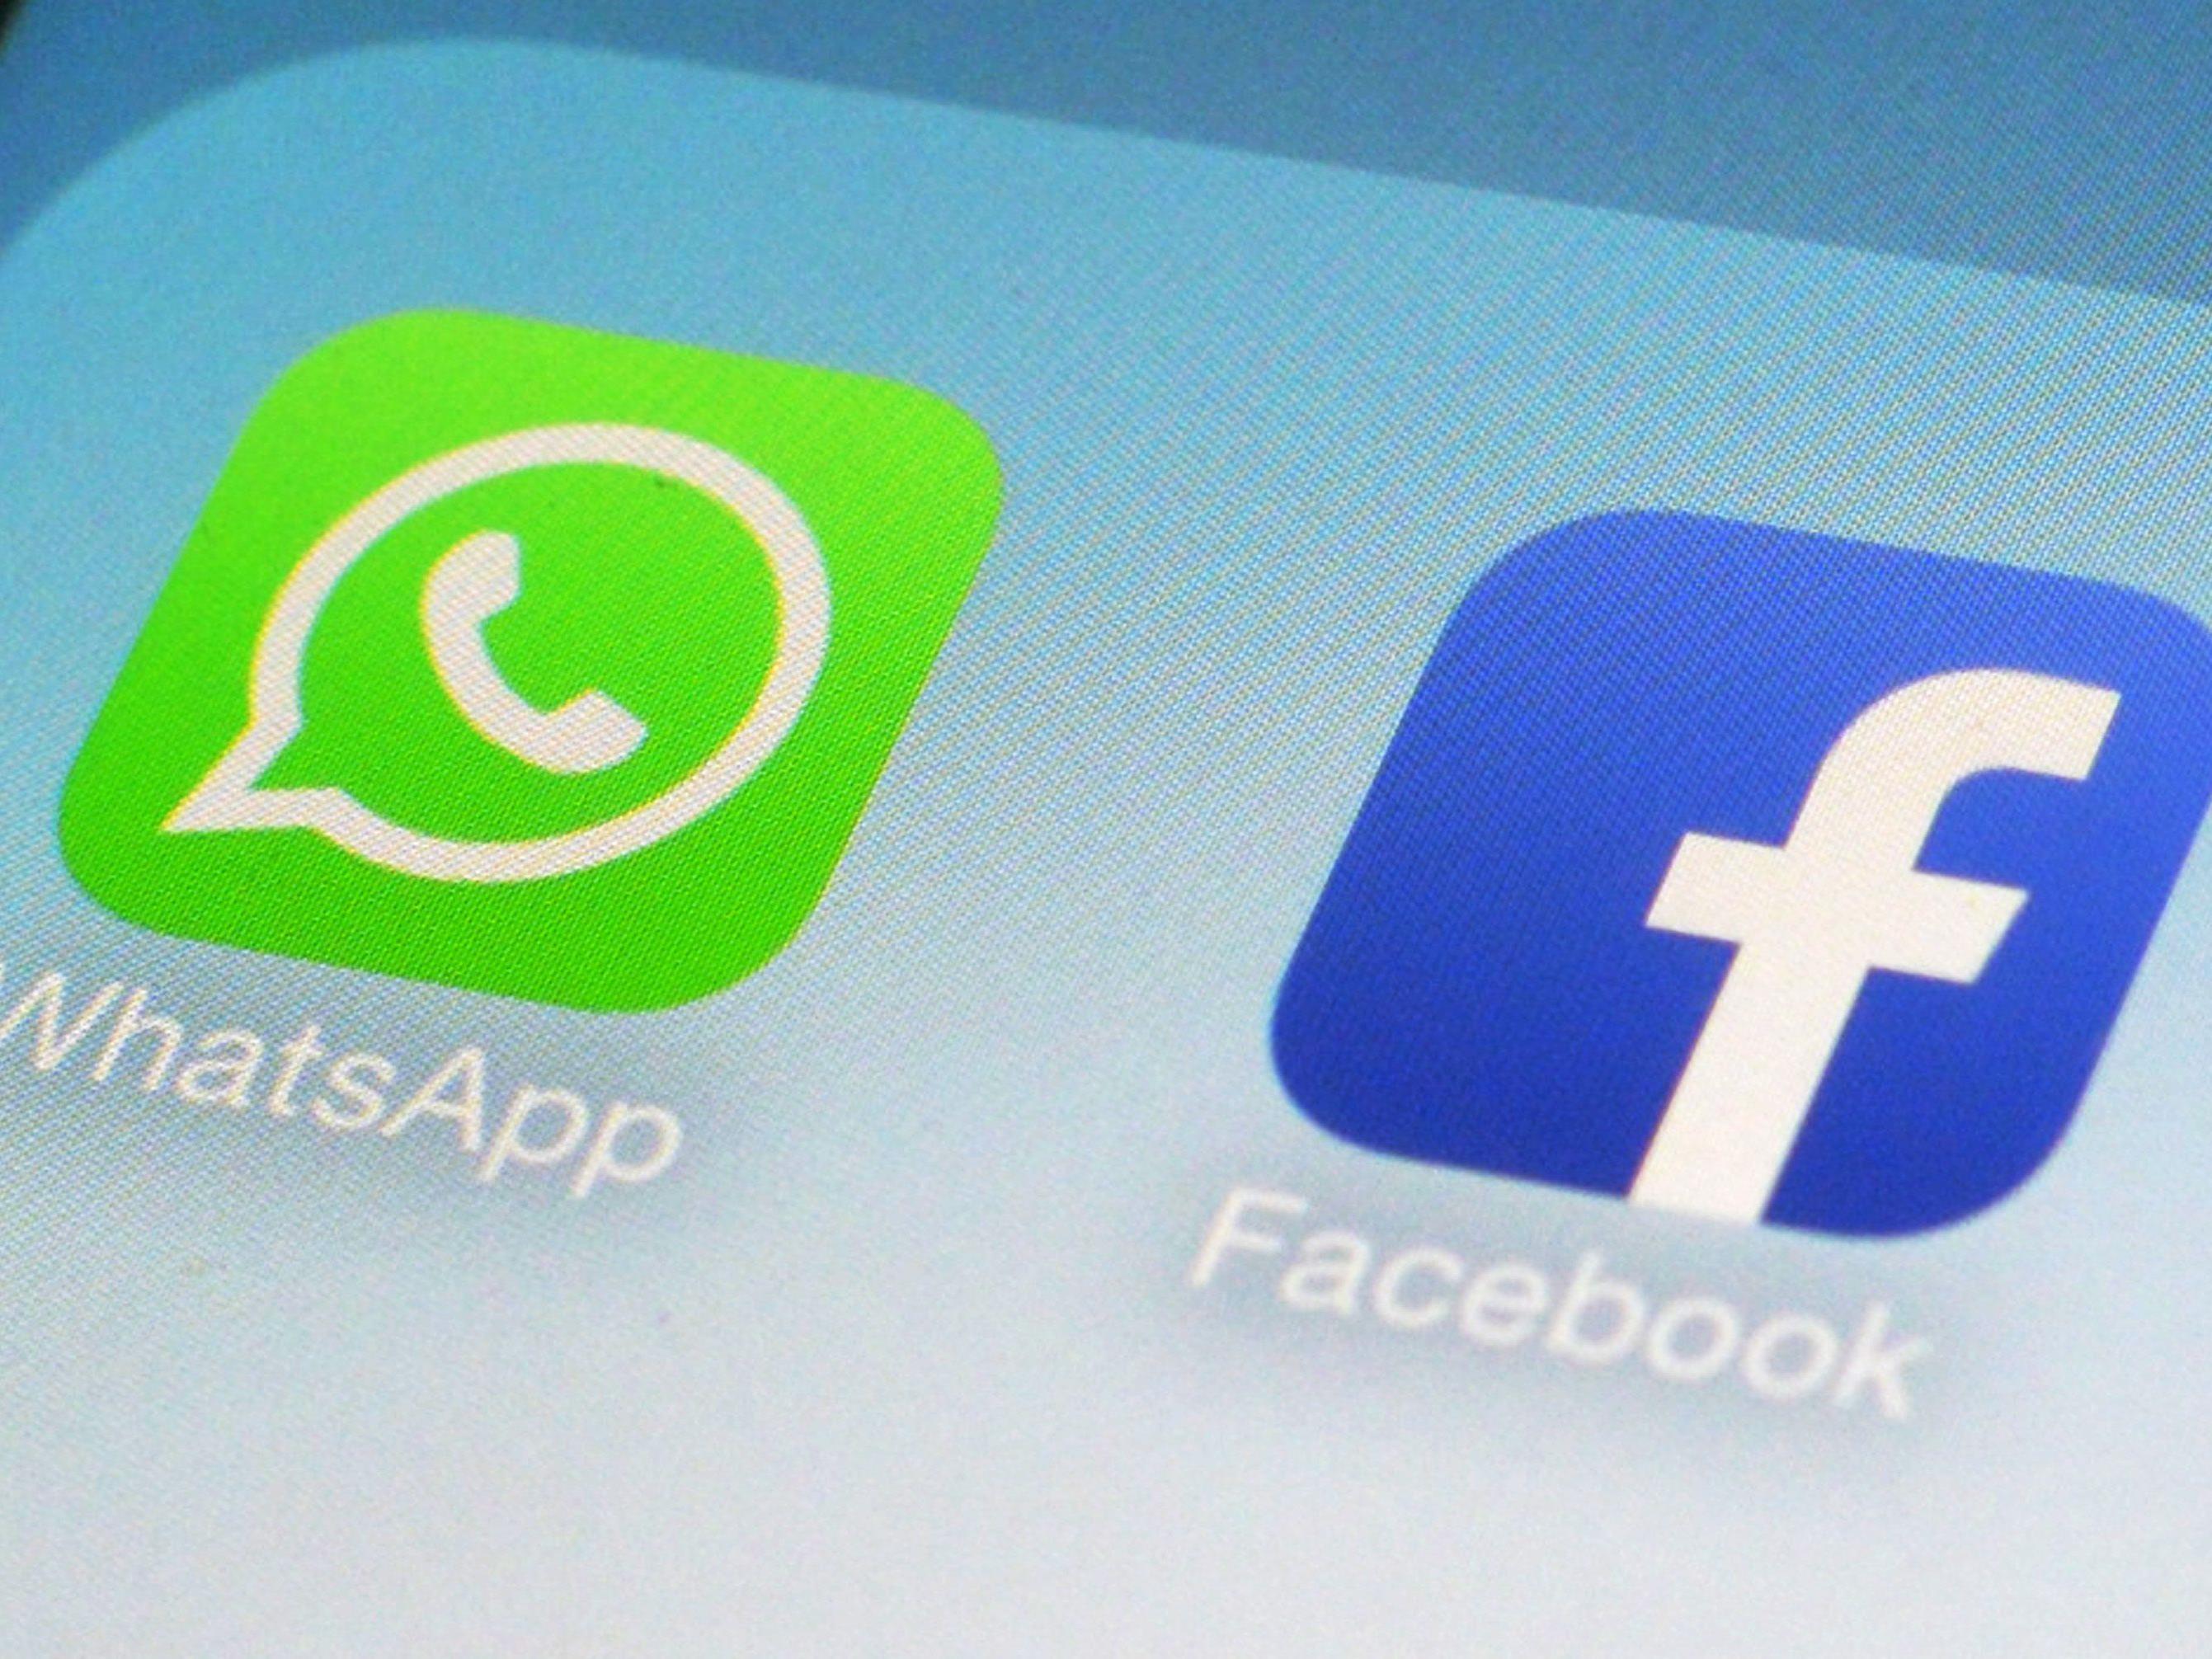 WhatsApp kehrt mit den Neuerungen bei der Status-Funktion zu den Wurzeln zurück.